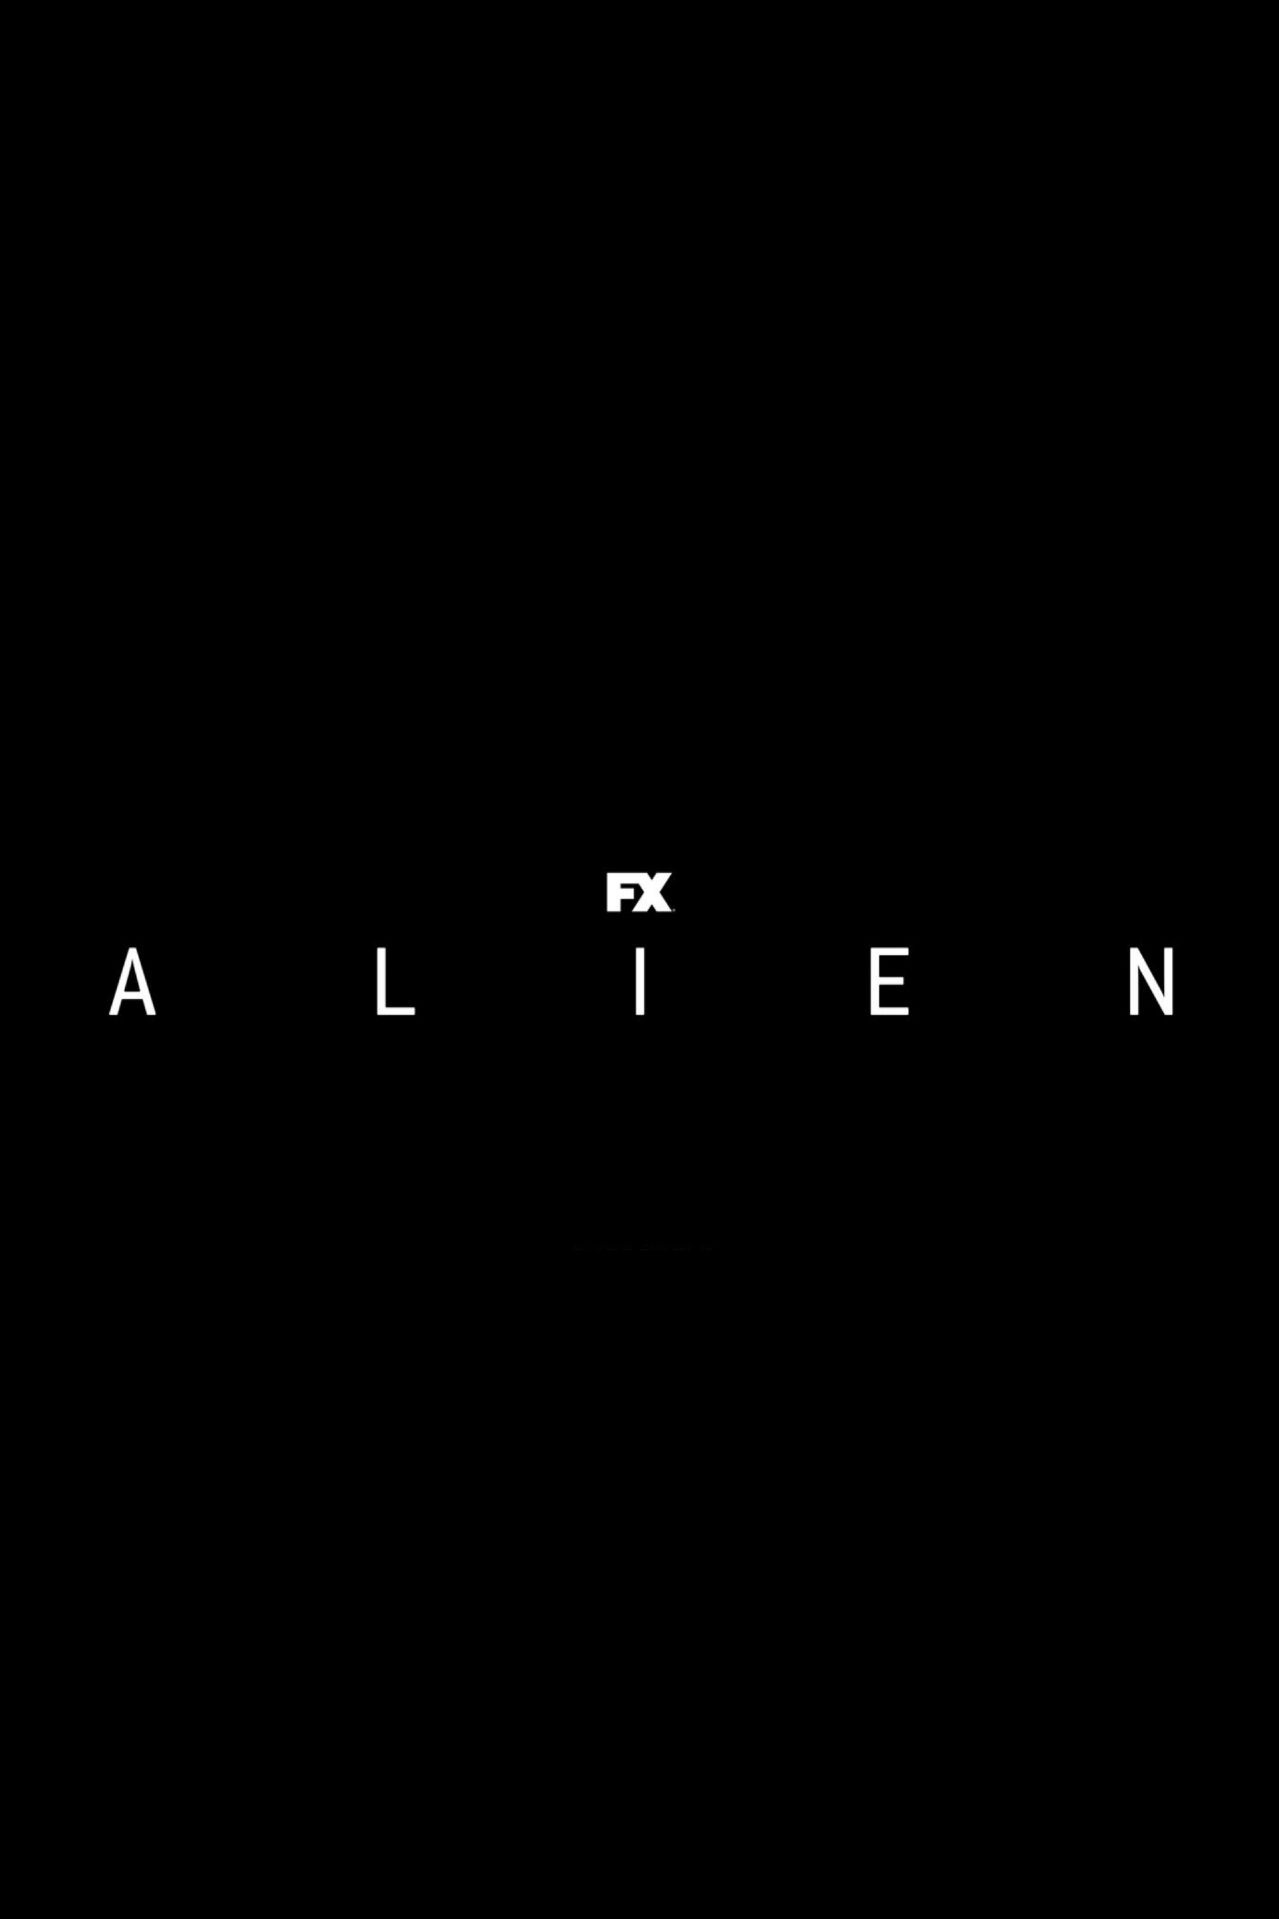 Alien FX TV Series Logo Poster